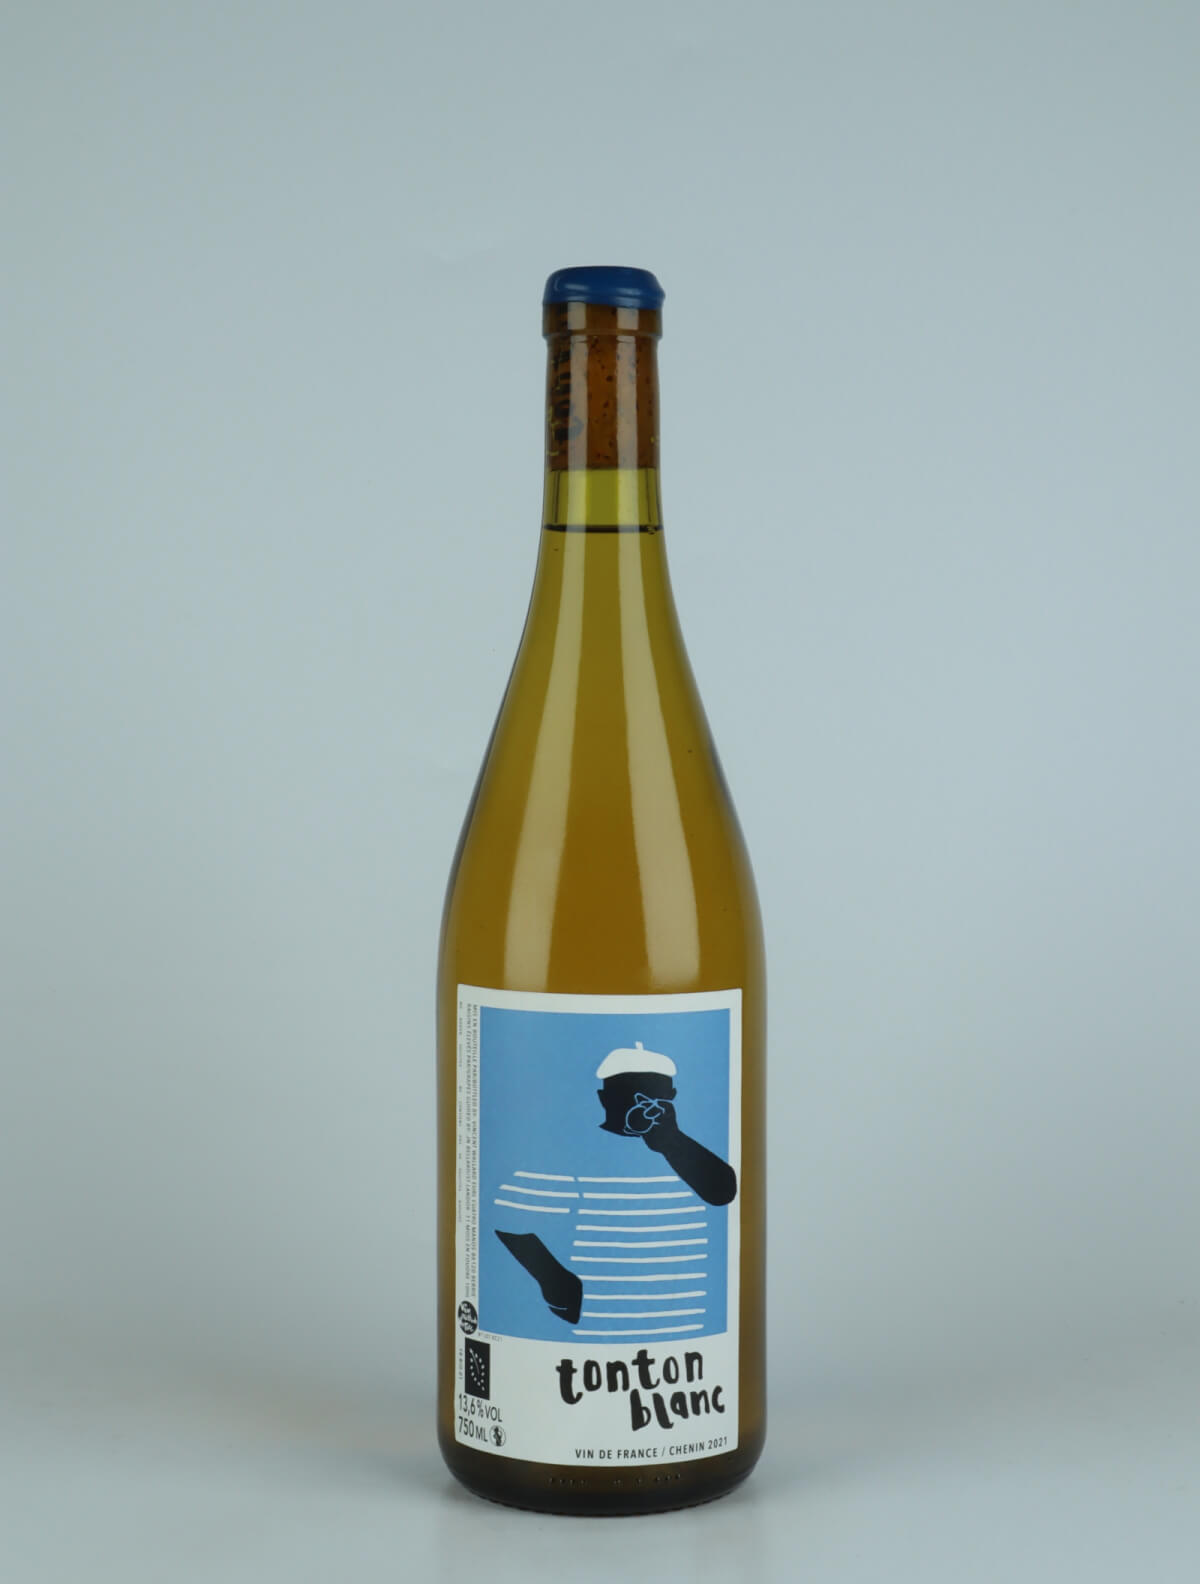 A bottle 2021 Tonton Blanc - Chenin White wine from Vincent Wallard, Loire in France